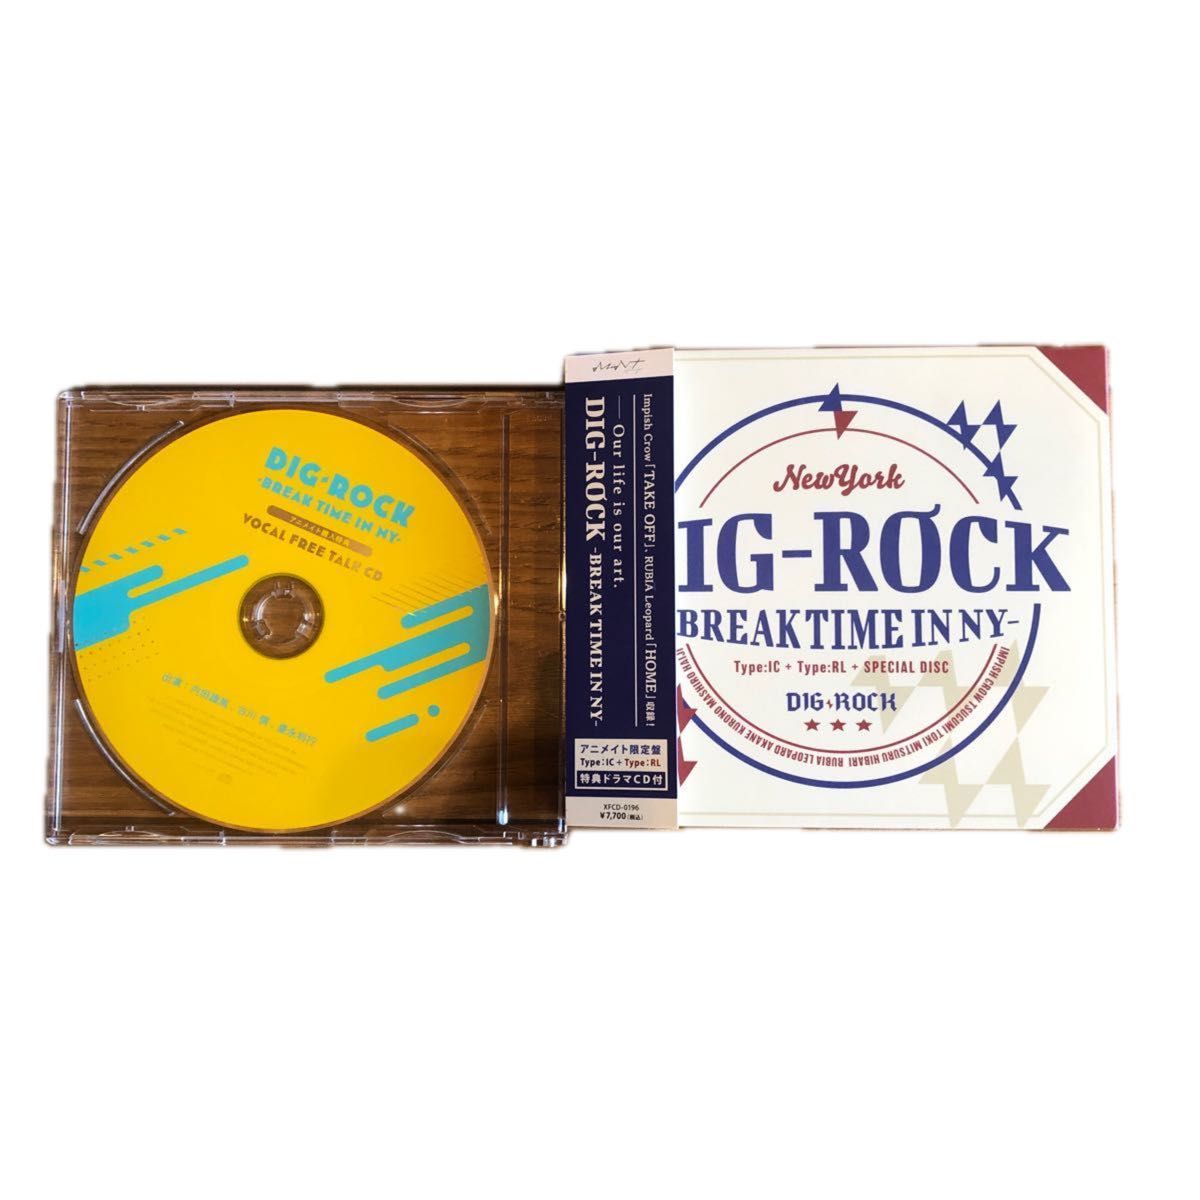 DIG-ROCK BREAK TIME IN NY 限定盤